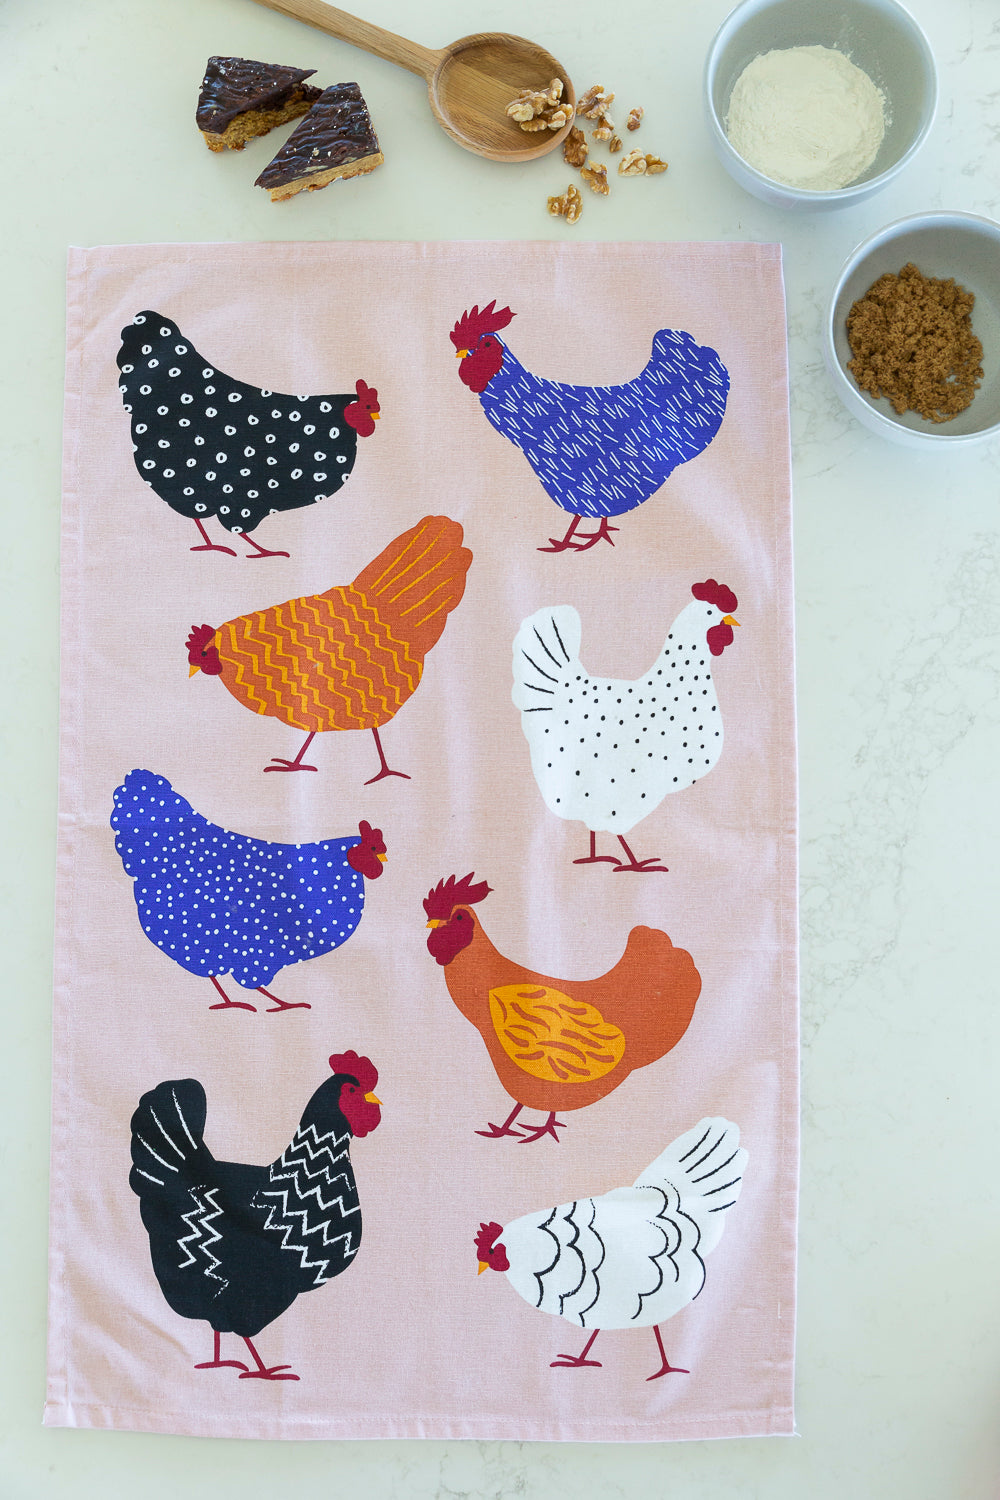 Tea Towel - Bright Hens